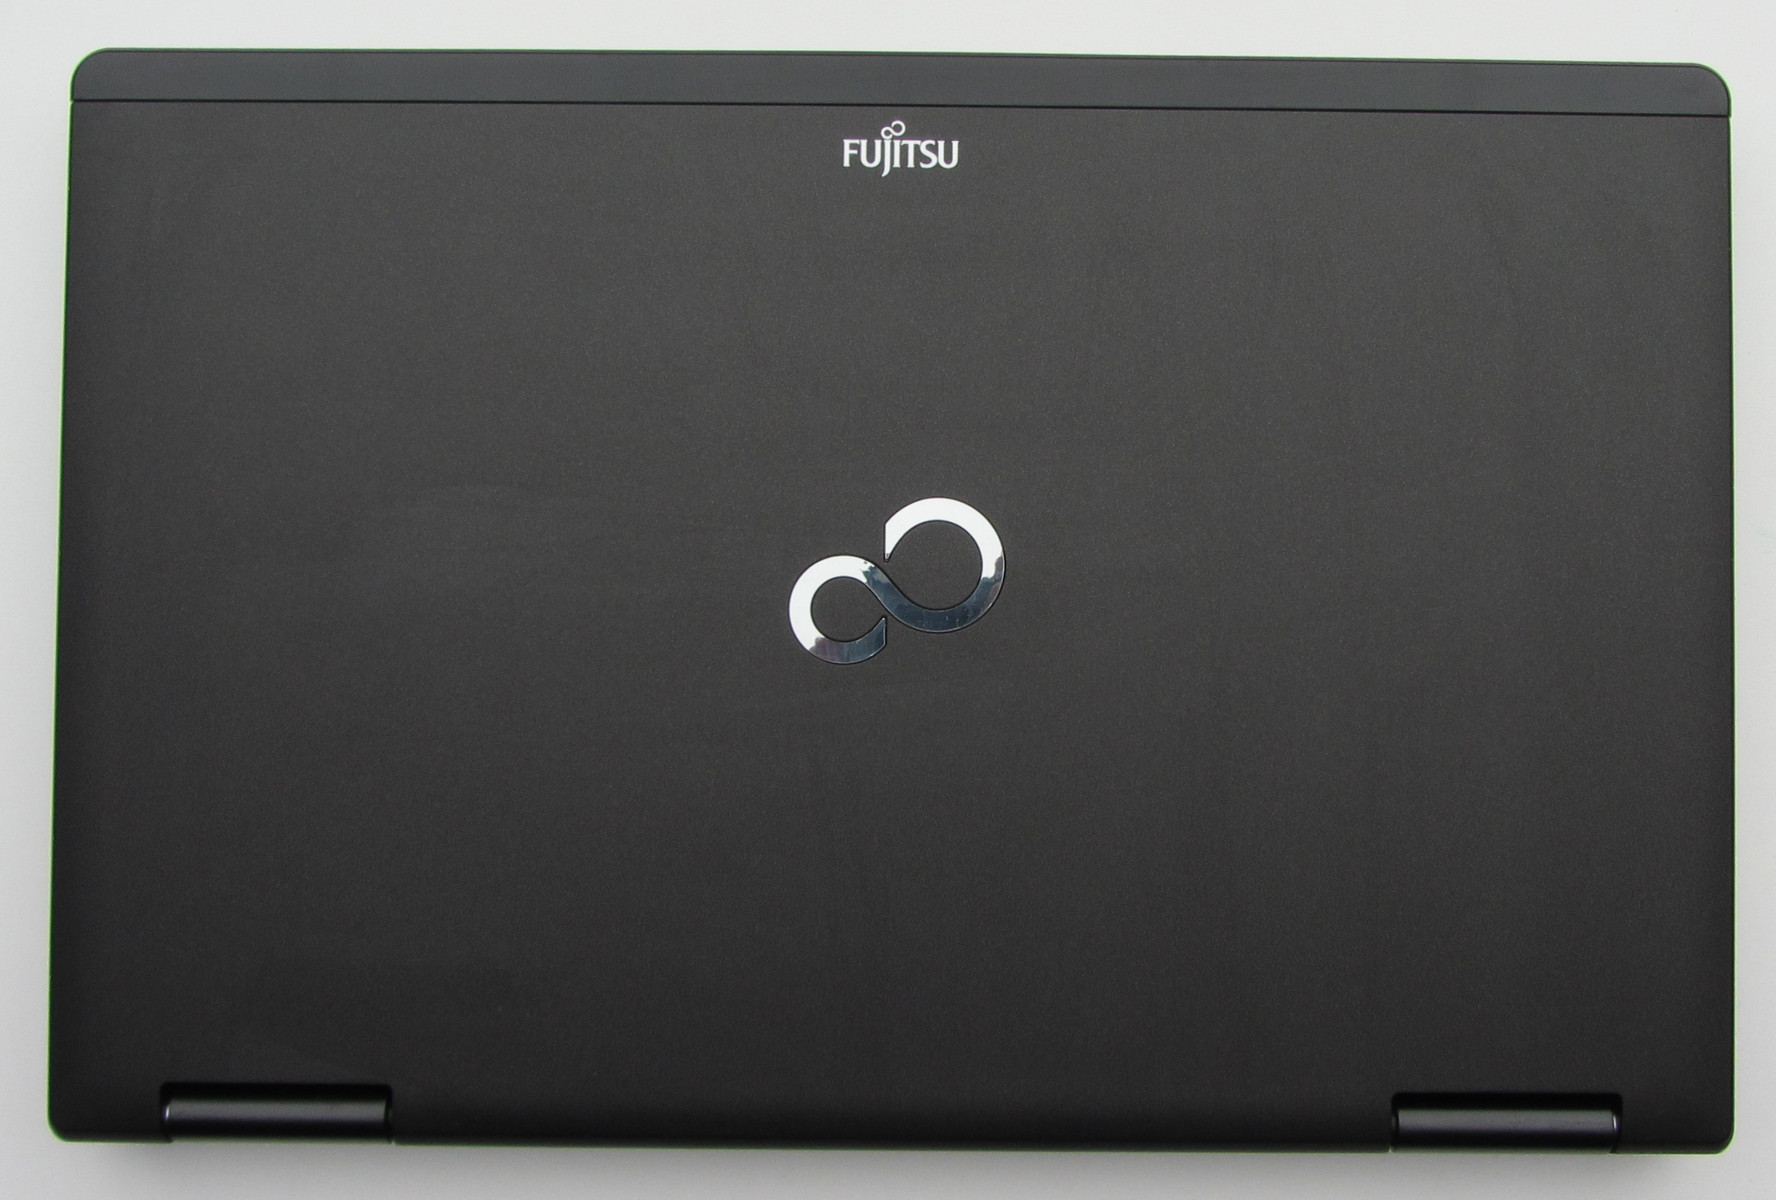 Review Fujitsu Lifebook E782 Notebook - NotebookCheck.net Reviews